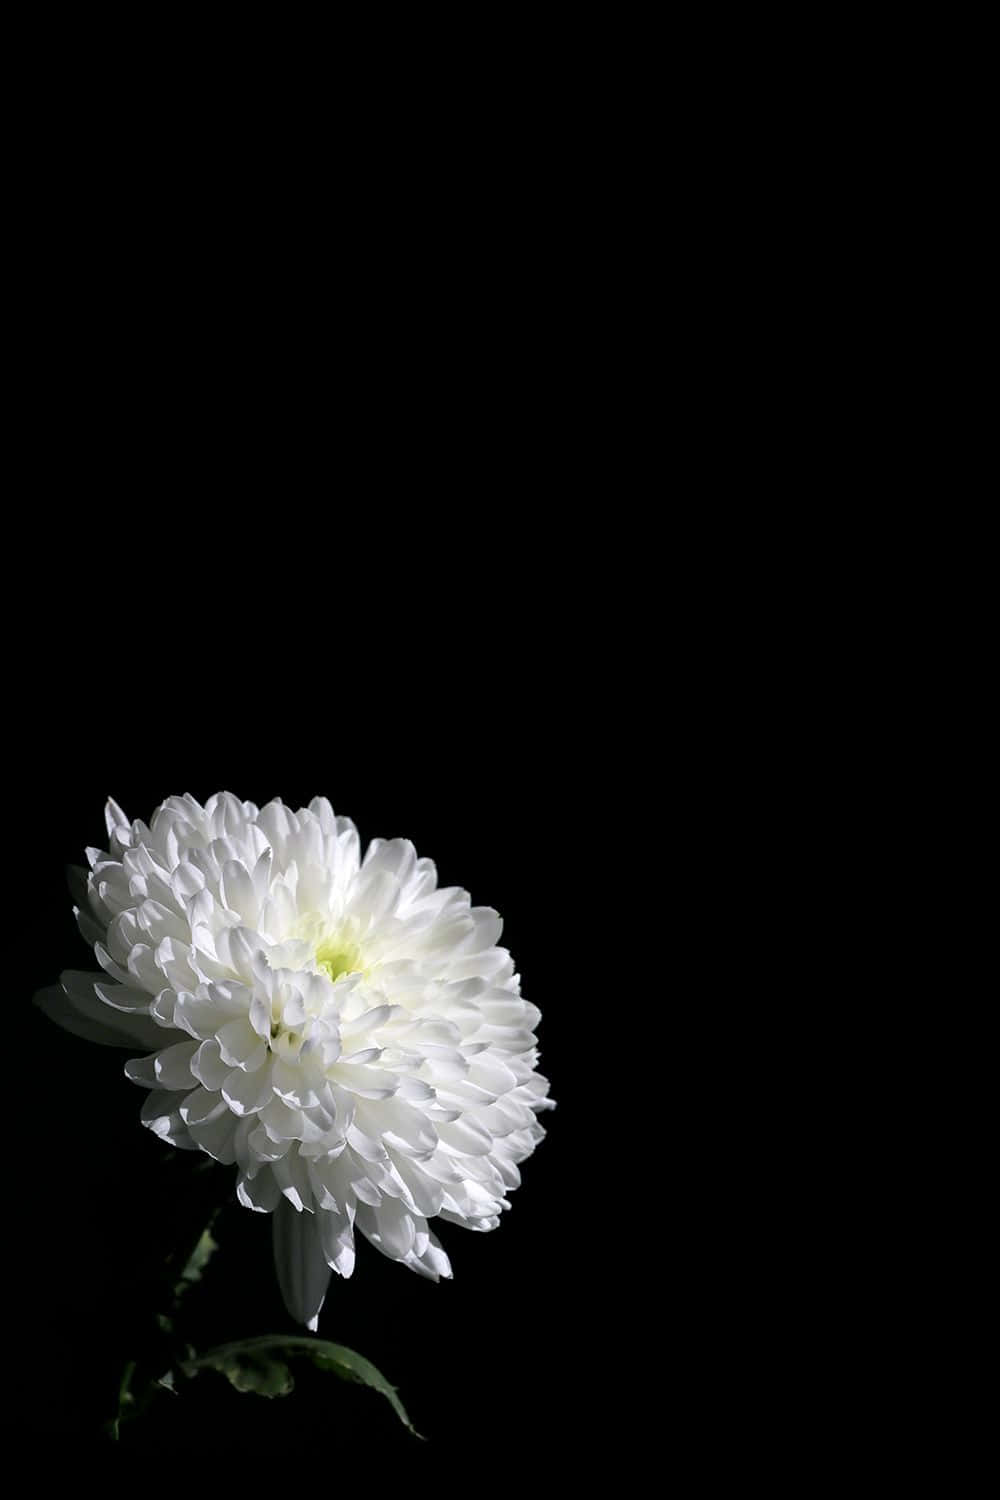 Elegant_ White_ Flower_ Against_ Black_ Background.jpg Wallpaper